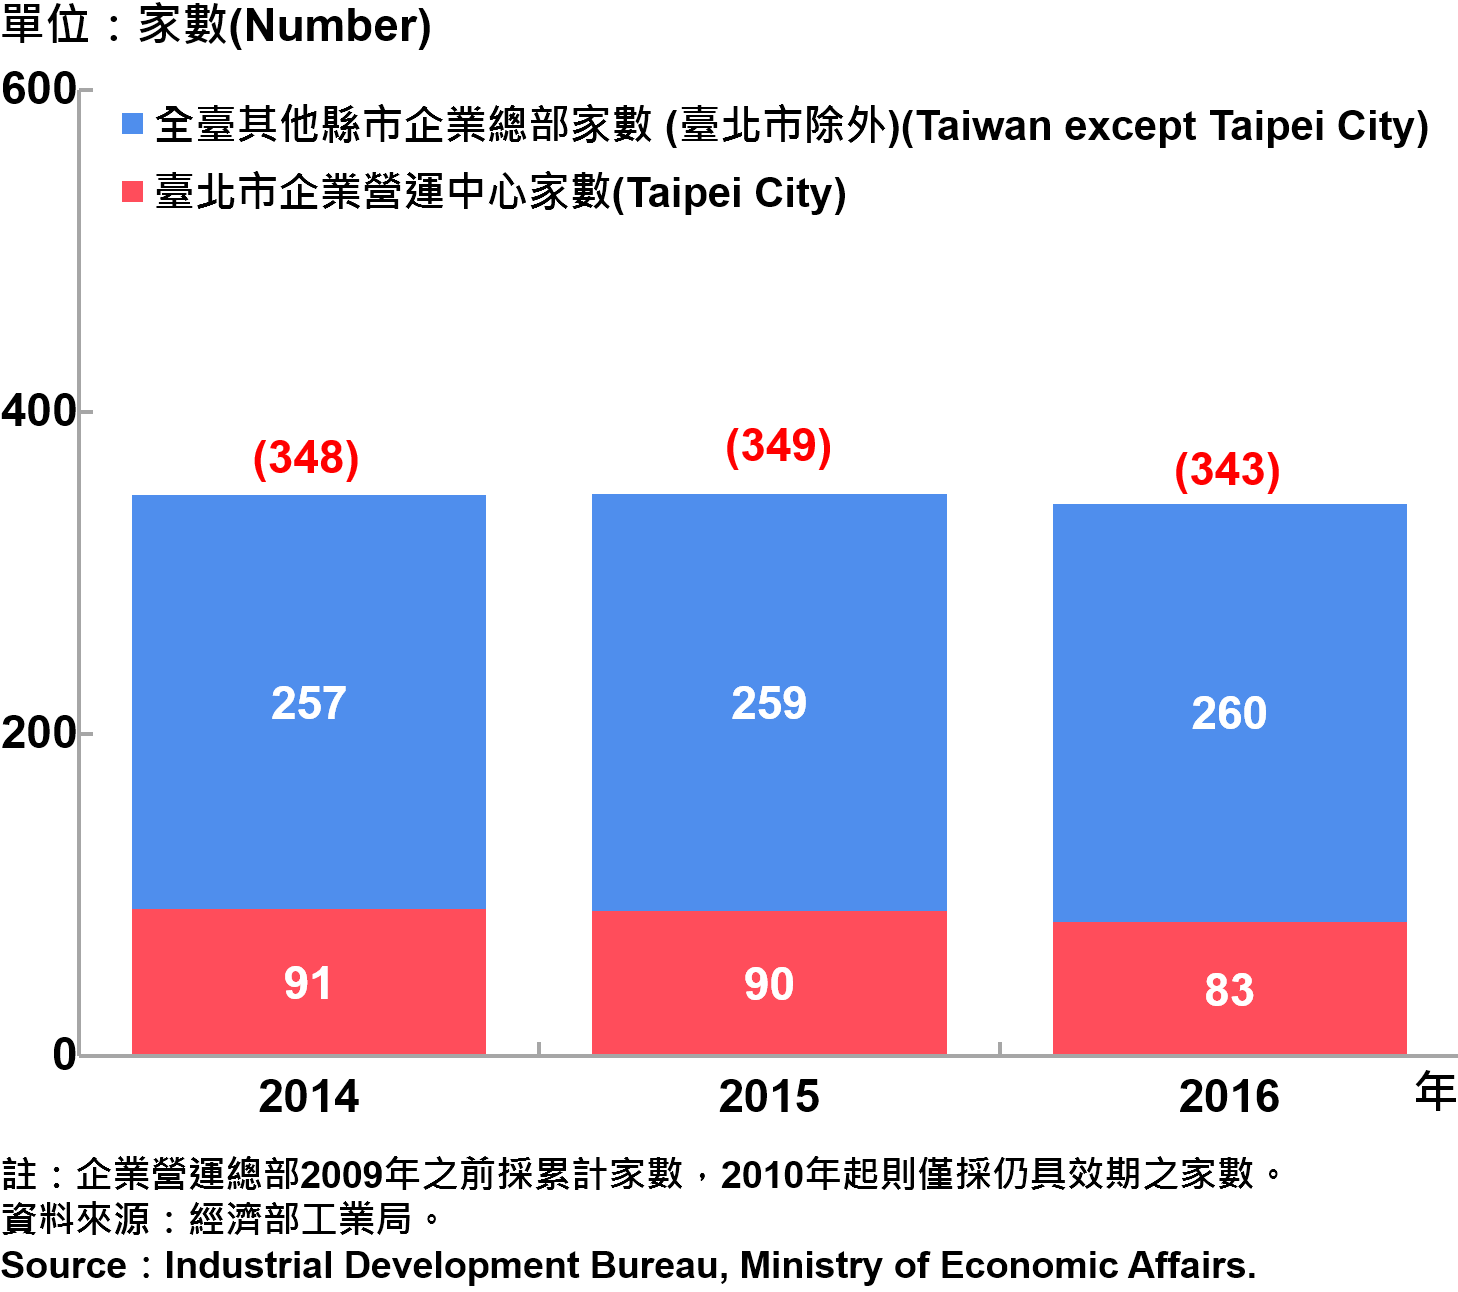 圖15、臺北市企業營運總部之設立家數—2016 Number of Established Enterprise Business Headquarters in Taipei—2016 注：企業營運總部2009年之前採累計家數，2010年起則僅採仍具效期之家數。